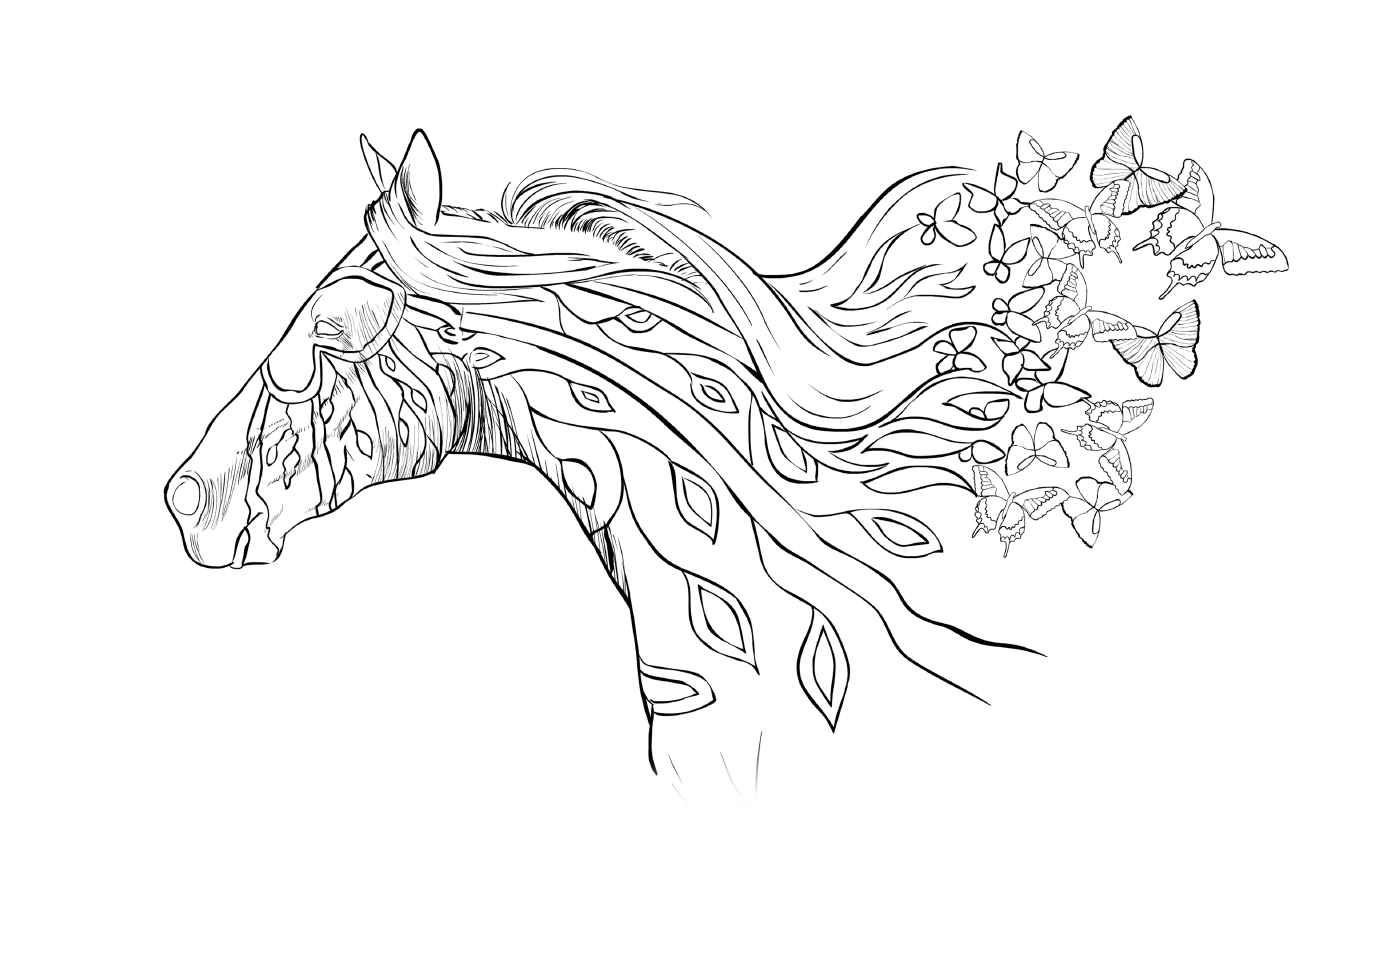   La tête d'un cheval avec des fleurs dans ses cheveux 